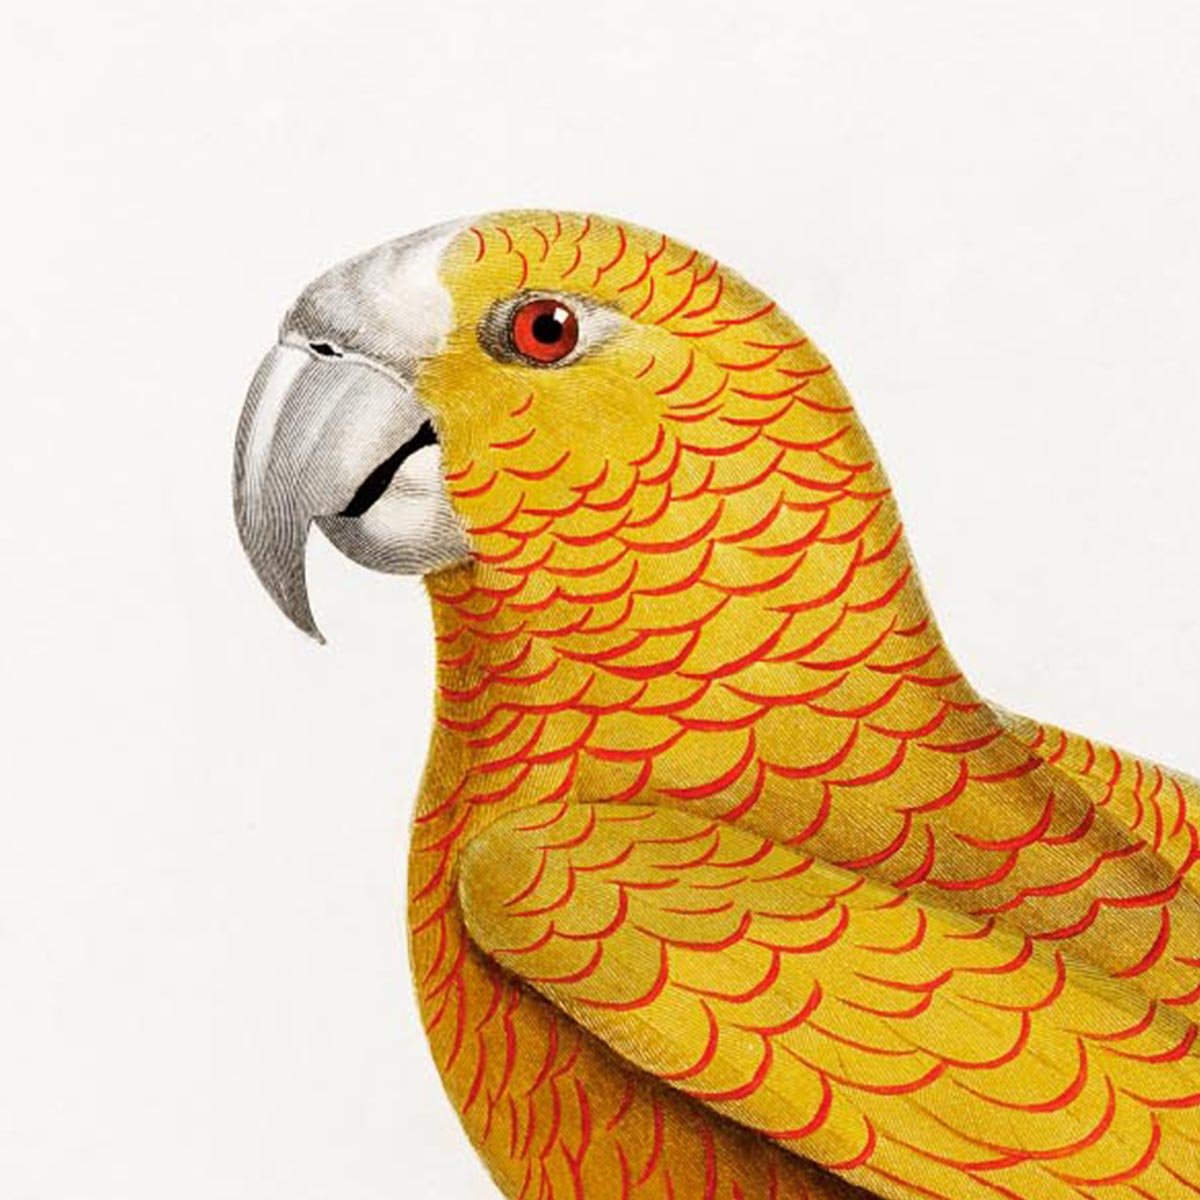 Yellow Parakeet Poster